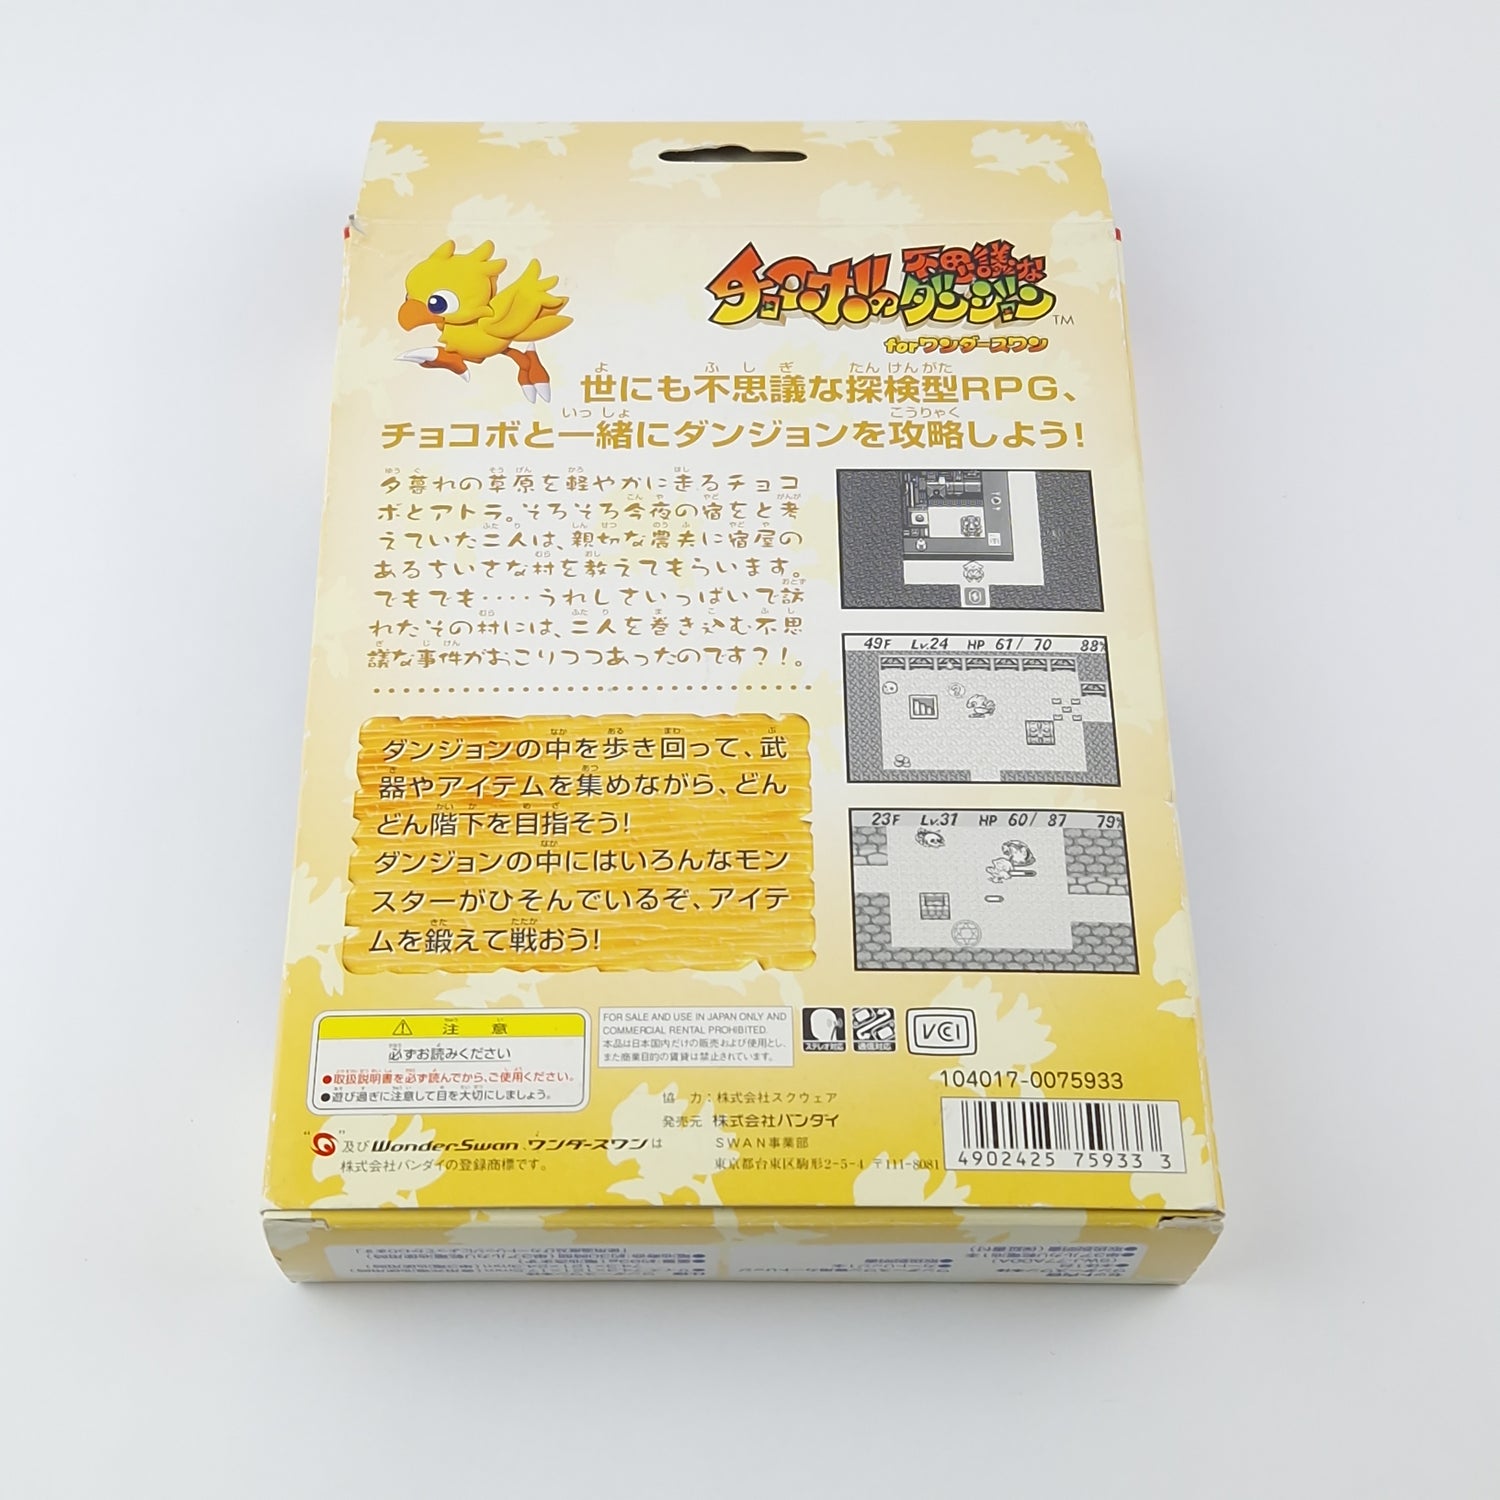 Bandai Wonderswan Console: Chocobo no Fushigi na dungeon Value Package - OVP